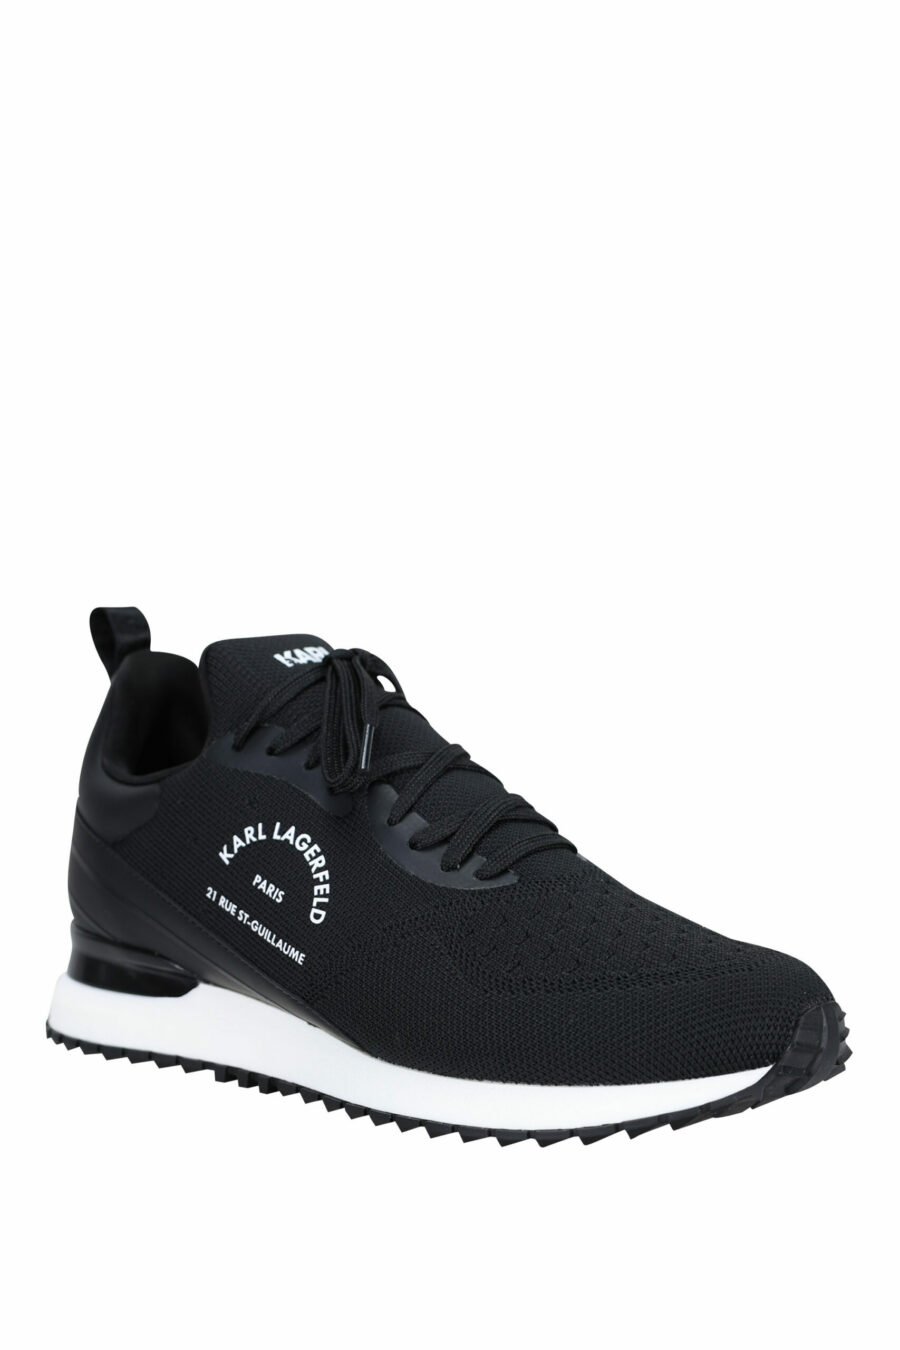 Sapatos "velocitor" pretos com logótipo "rue st guillaume" branco - 5059529326370 1 scaled